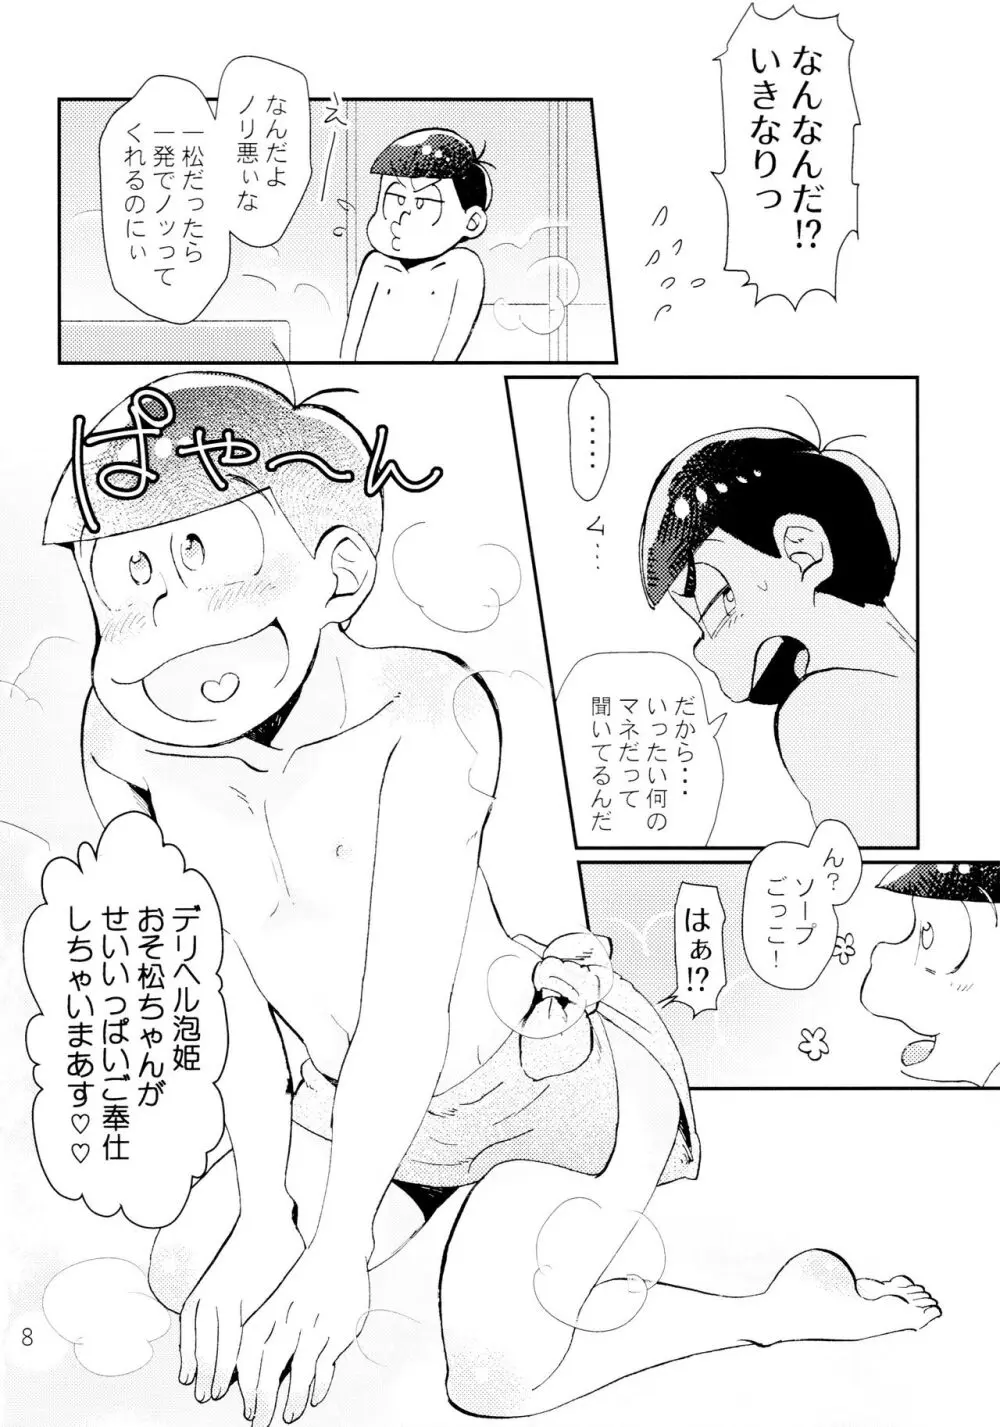 [チカチカ (cika) Lovely Honey Punkish (おそ松さん) - page8